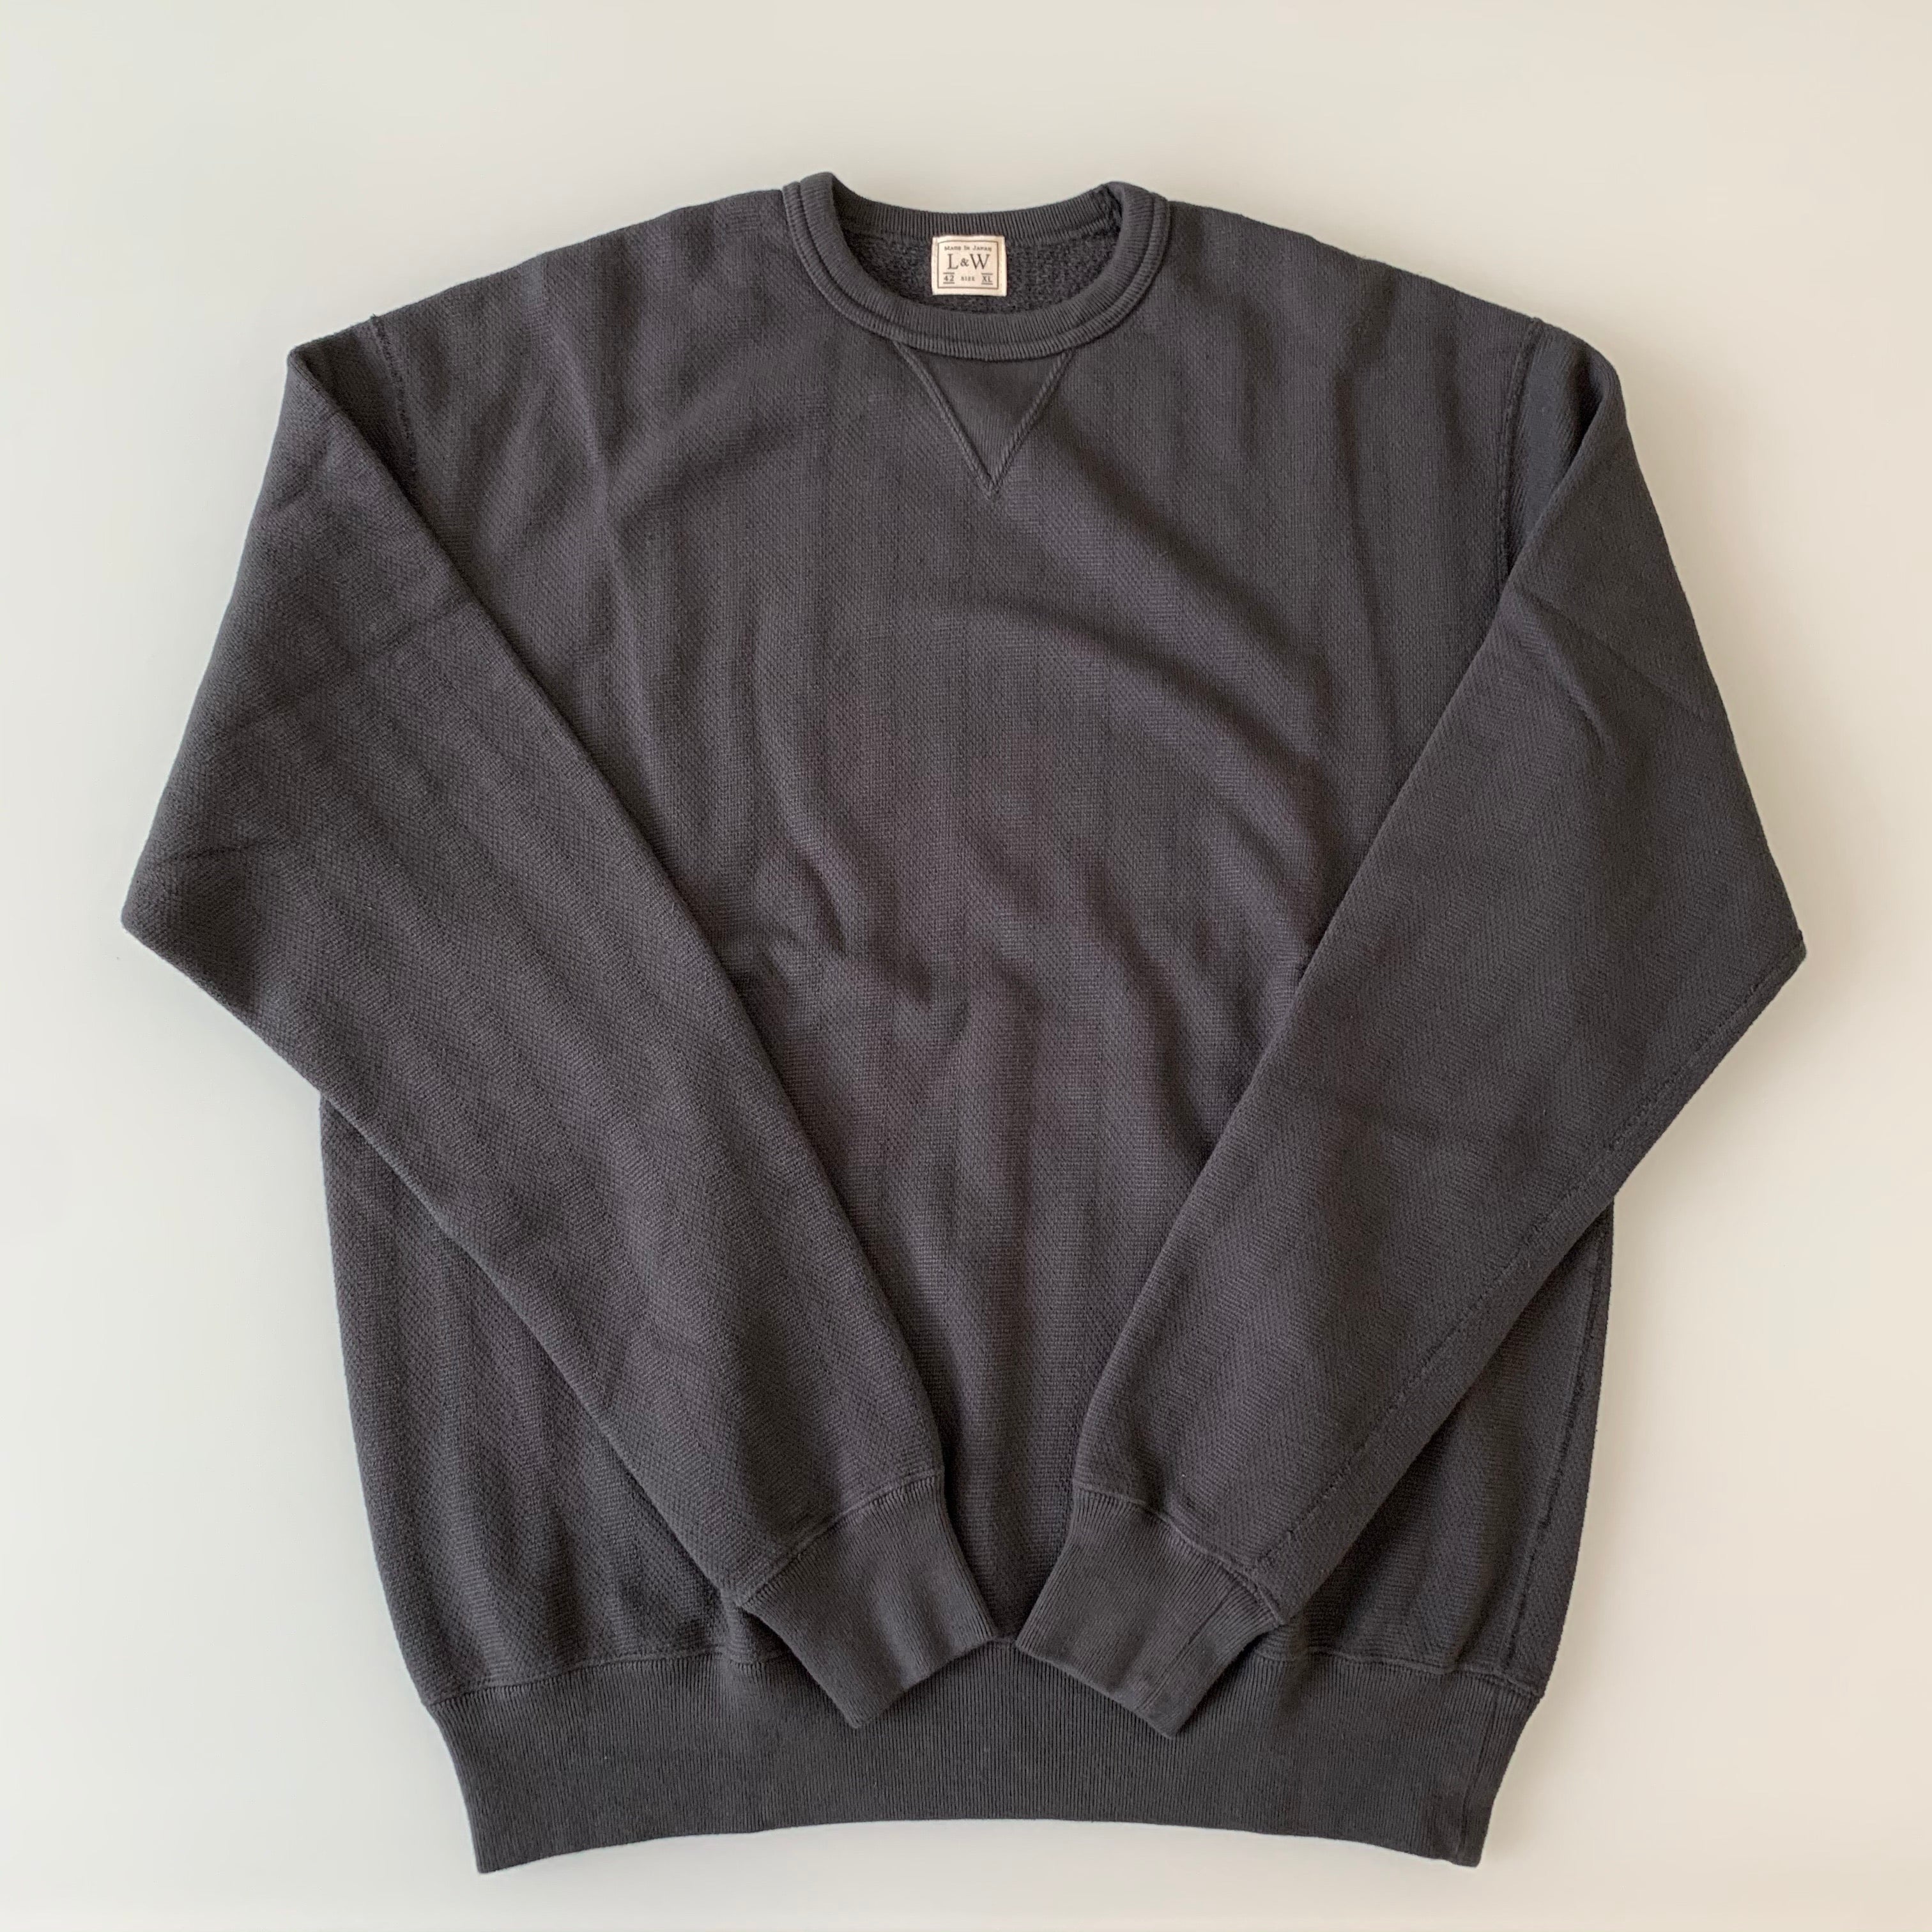 Vintage Jacquard Knit V-Gusset Sweatshirt in Antique Black